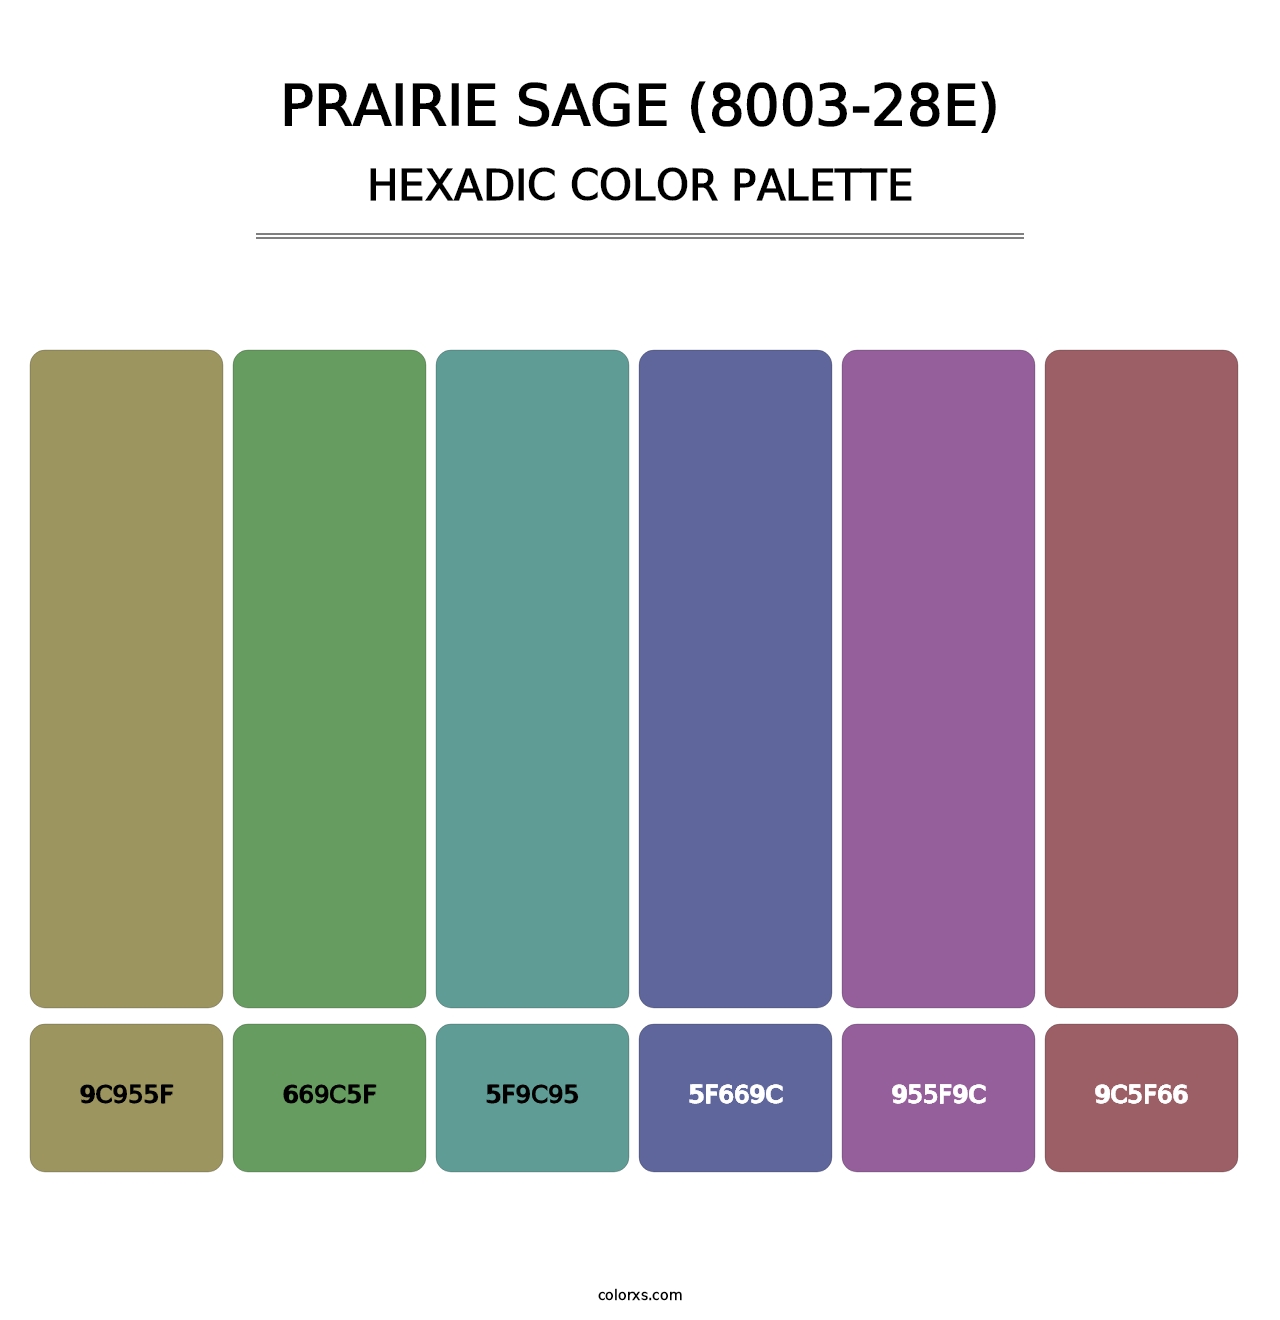 Prairie Sage (8003-28E) - Hexadic Color Palette